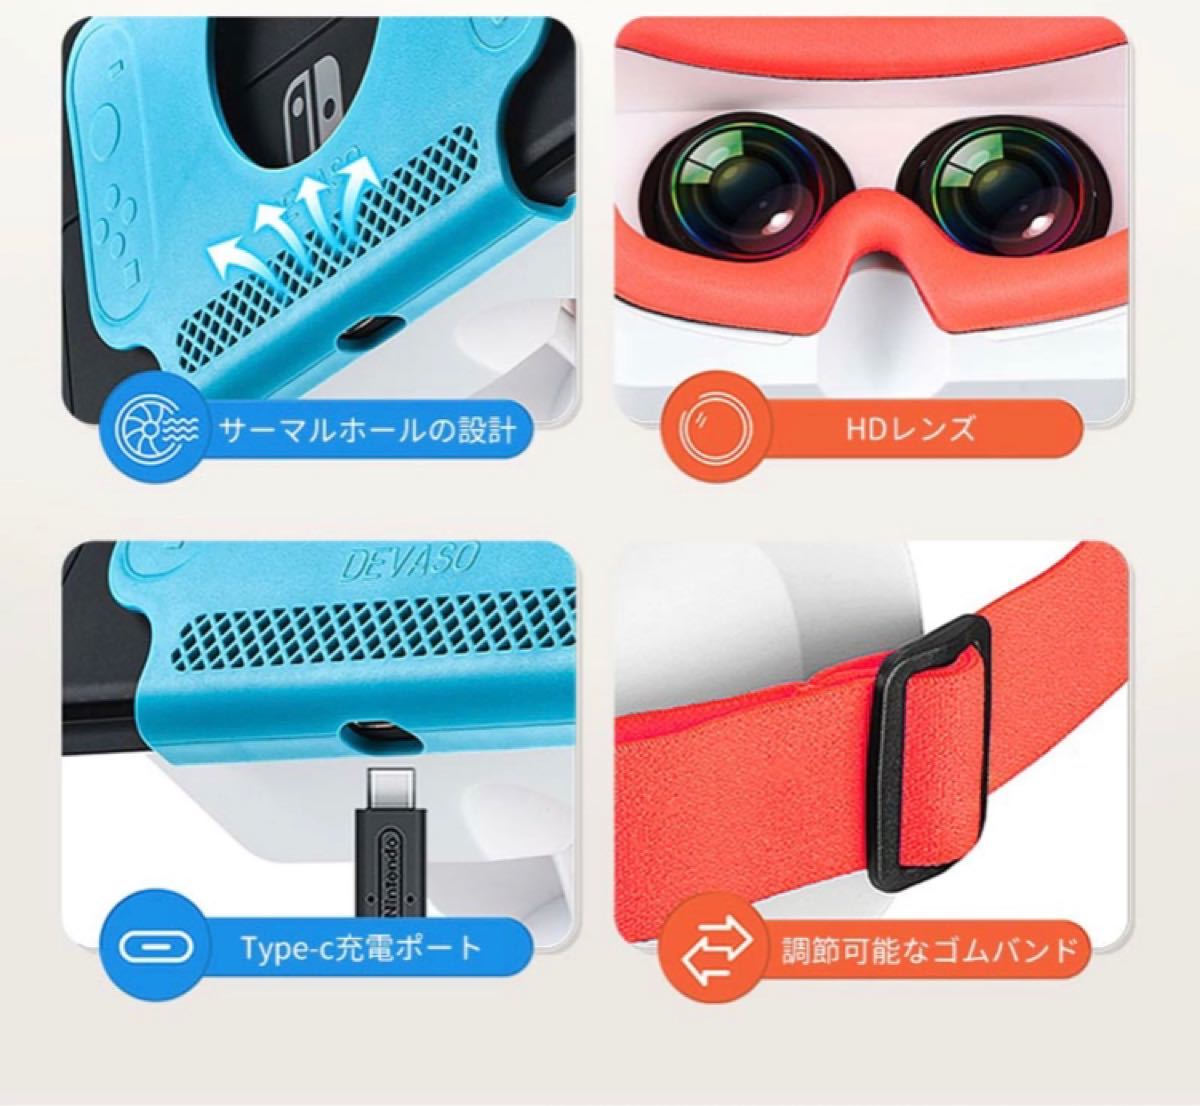 VRヘッドセット Nintendo Switch用 モデル 3D メガネ対応